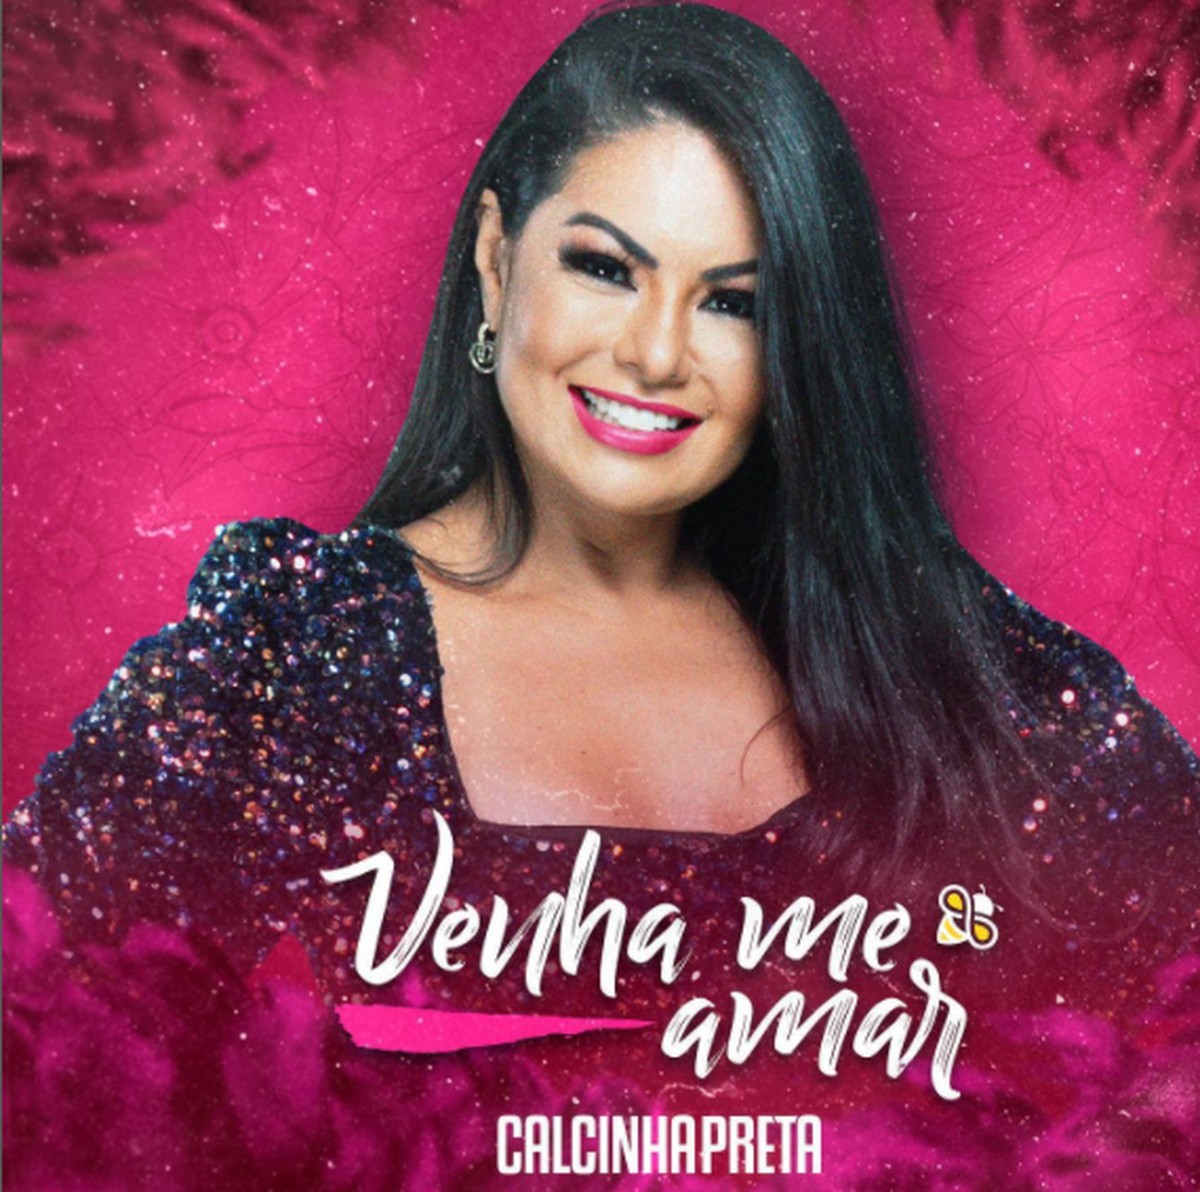 Calcinha Preta lança música alternativo por Paulinha Abelha |  Sergipe